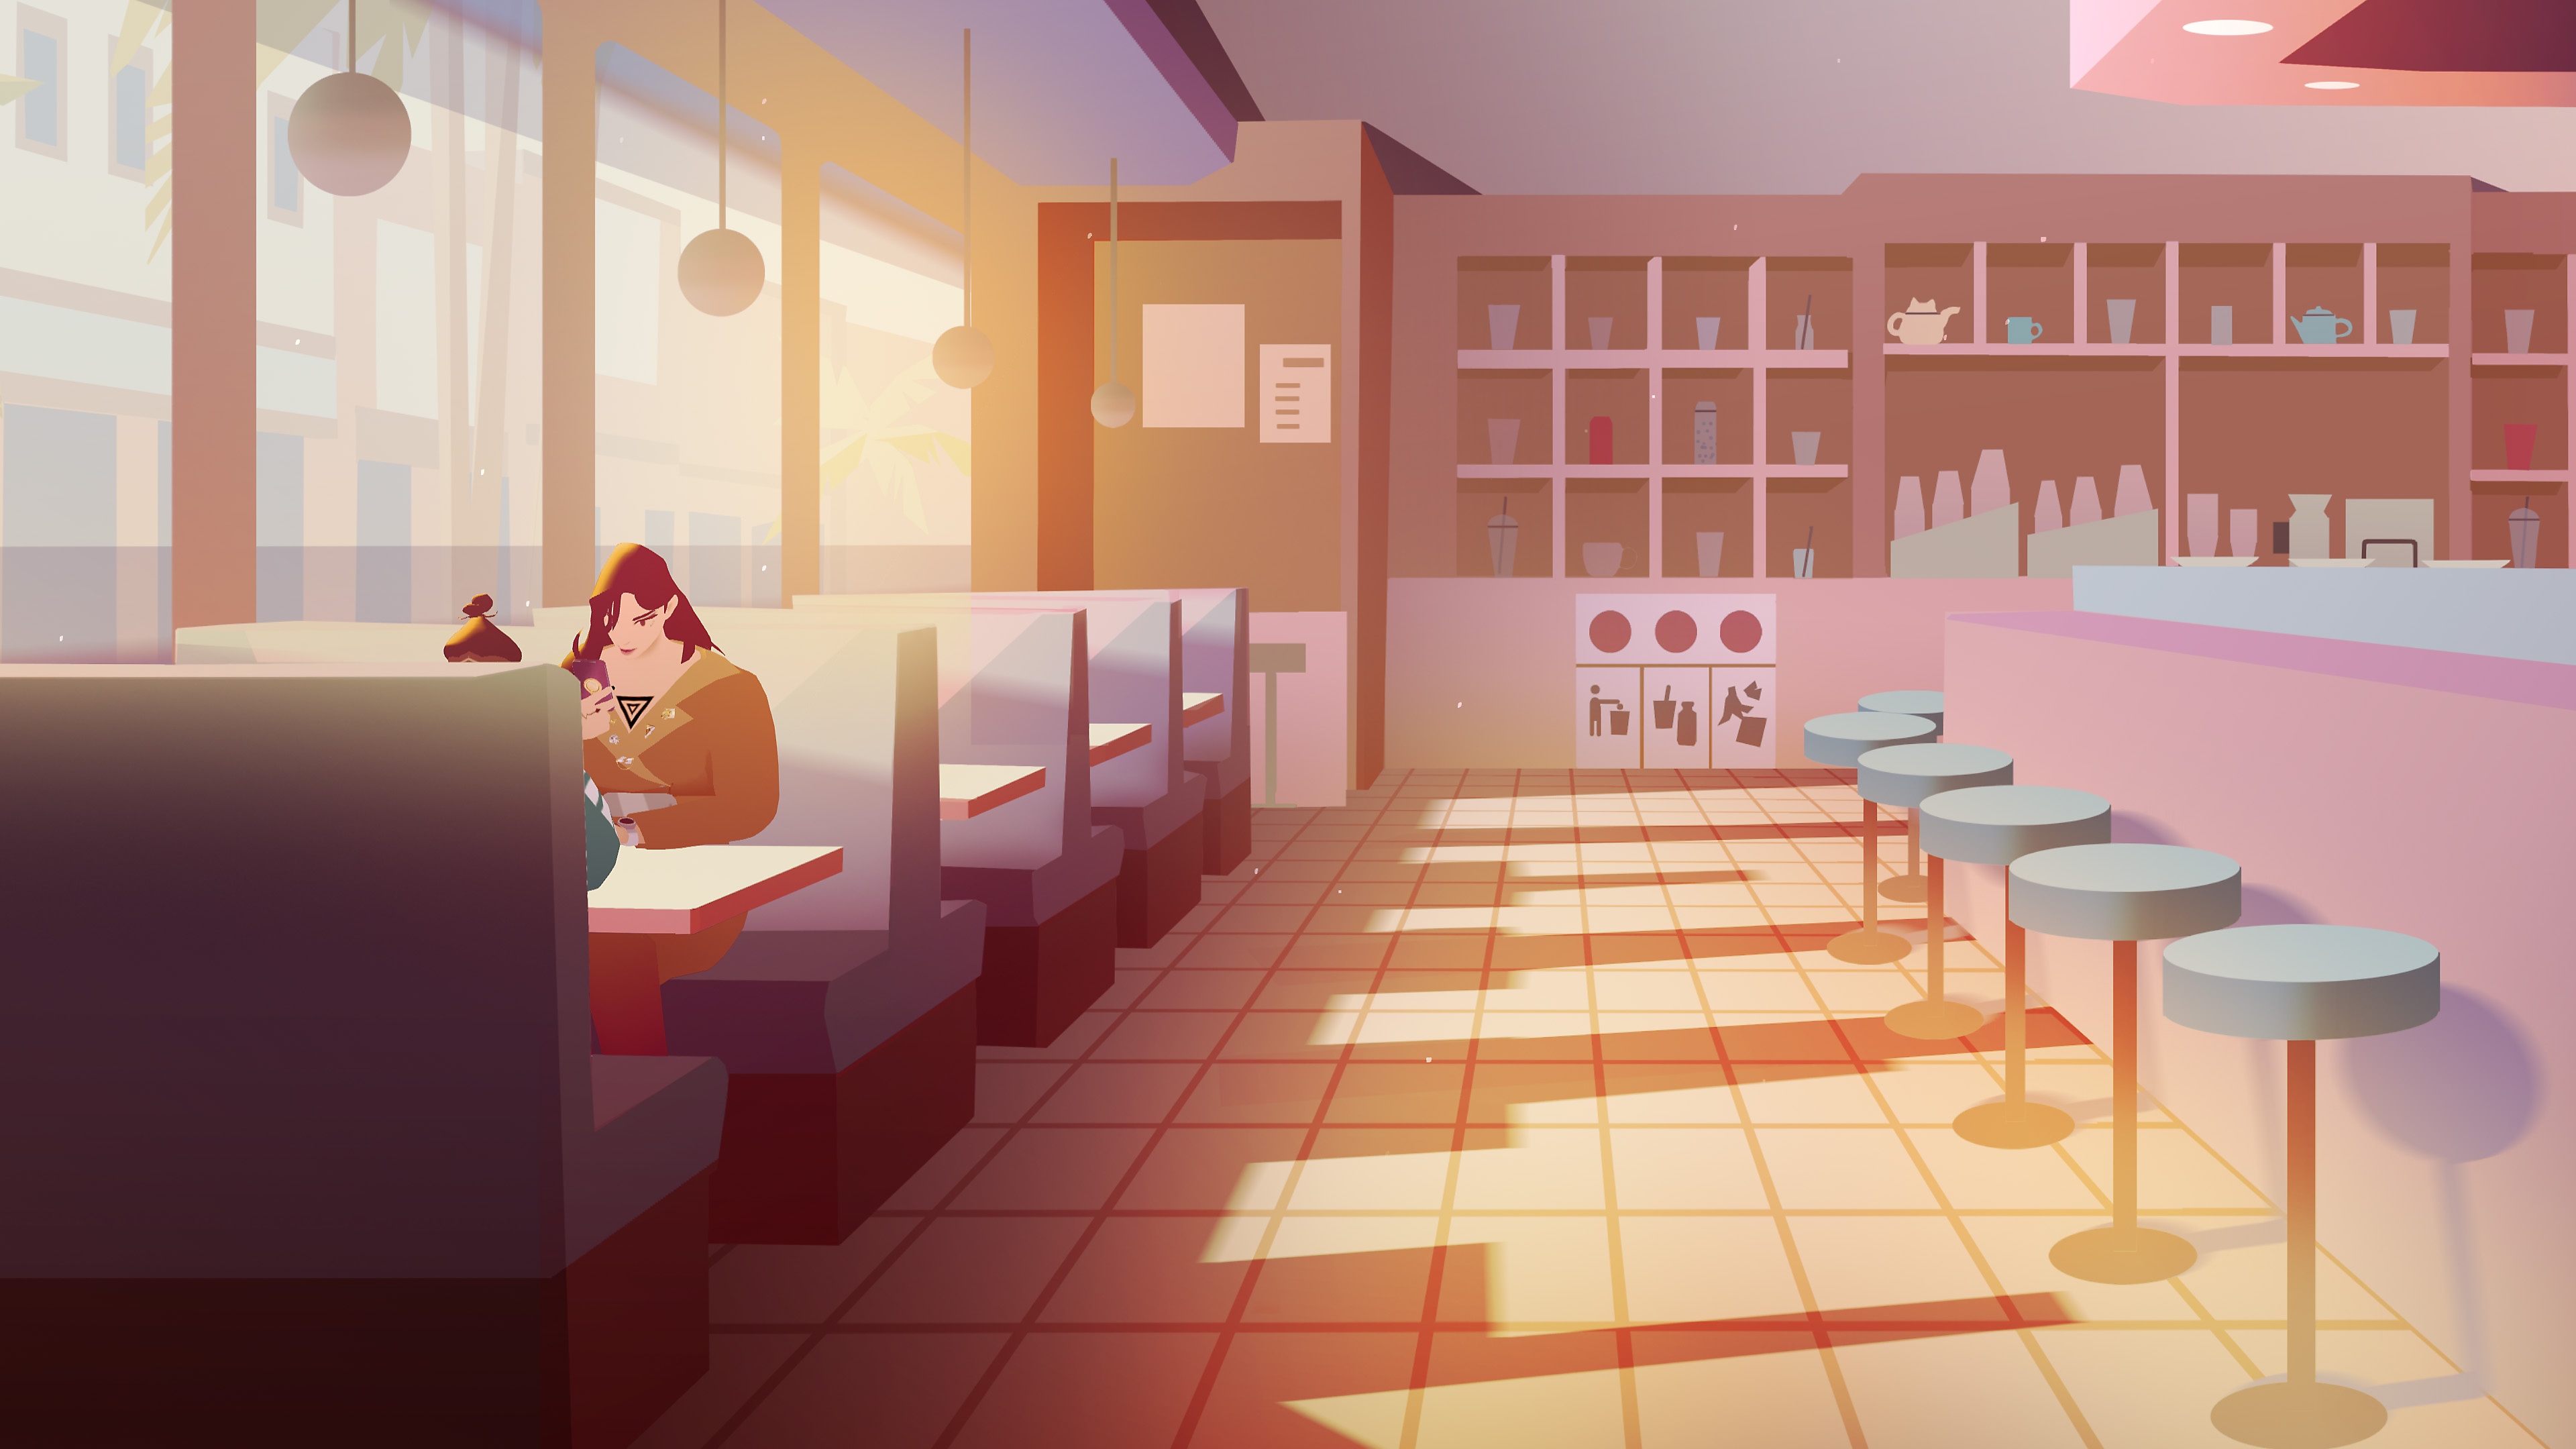 Snimka zaslona iz igre We Are OFK prikazuje dva lika u brzom restaurantu